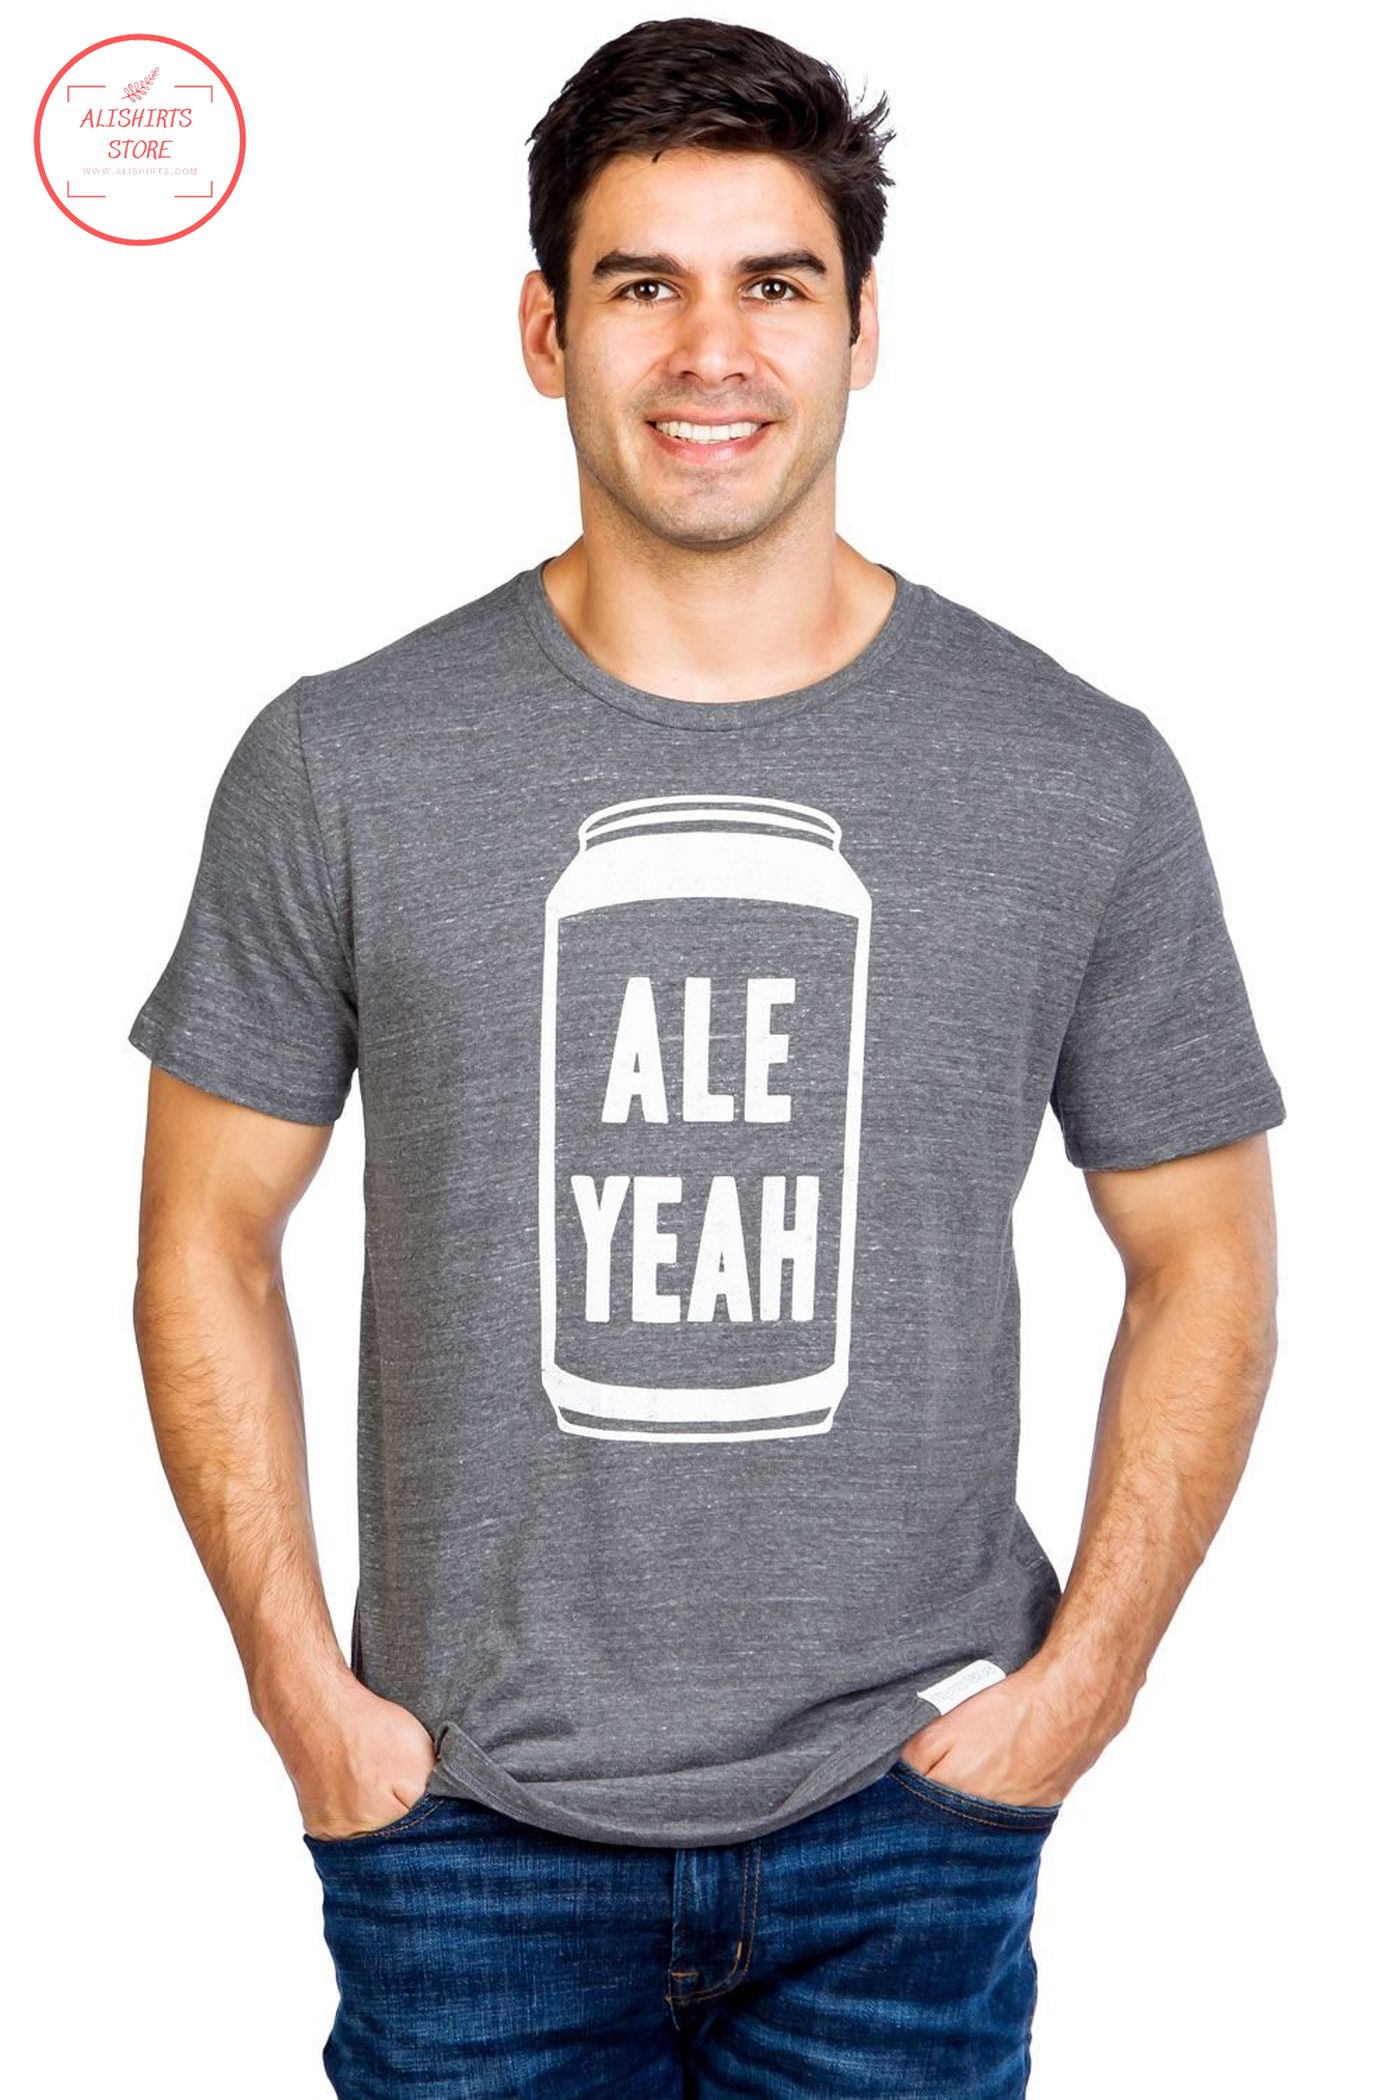 Ale yeah vintage beer T shirts